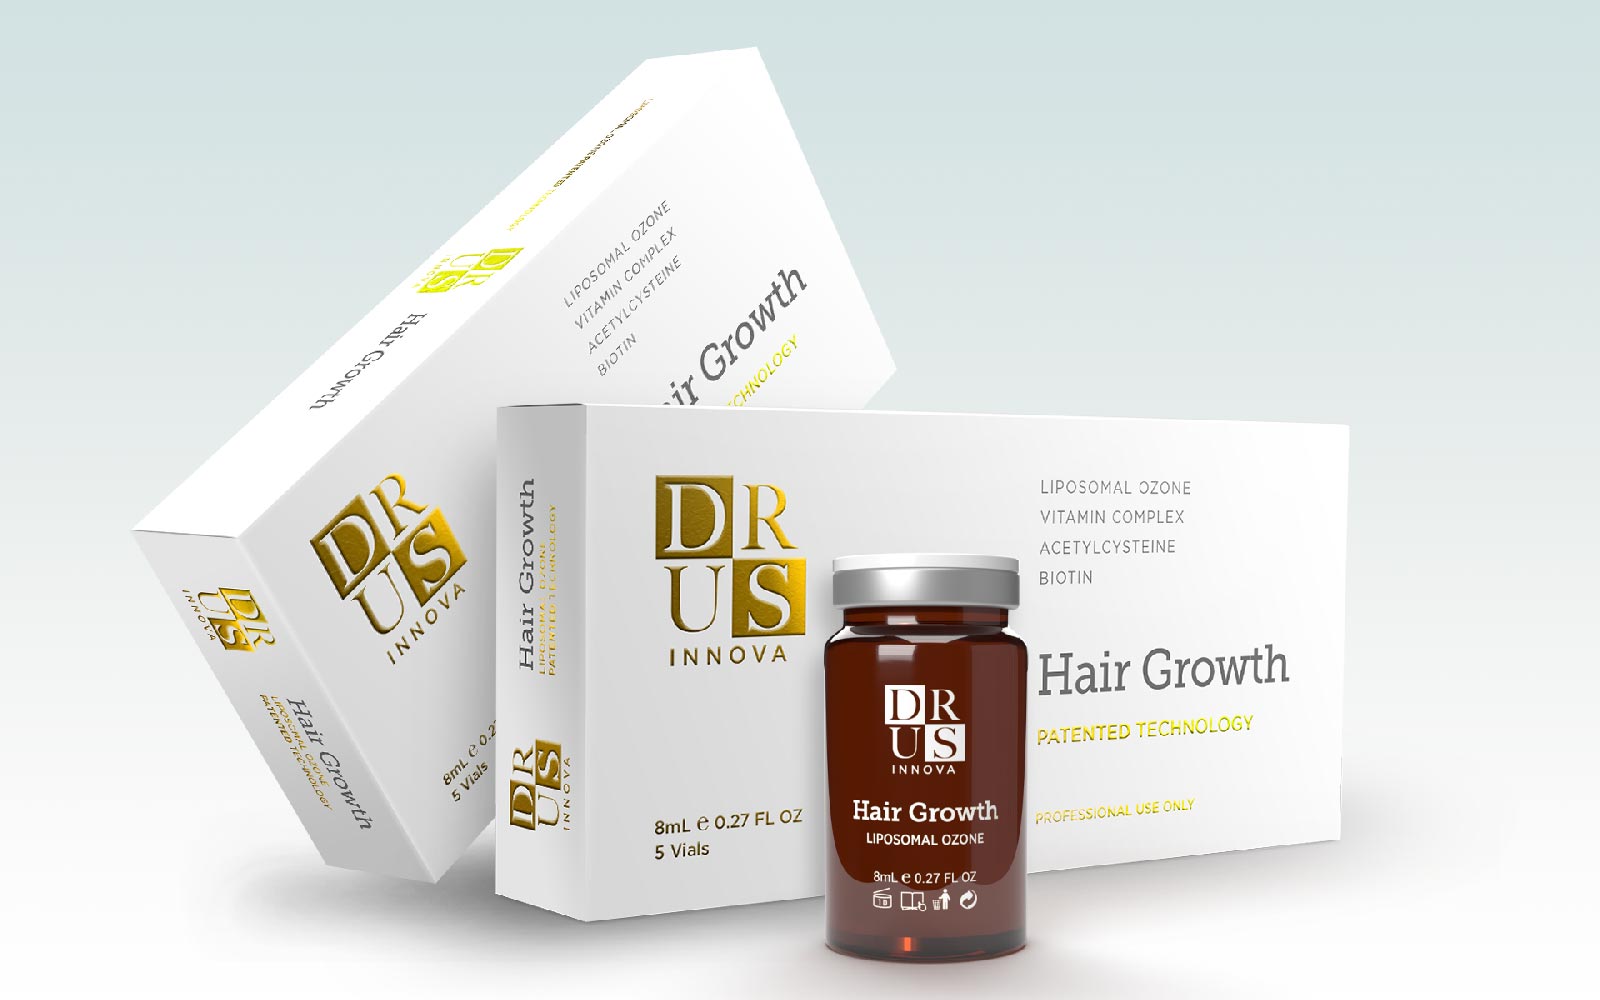 DRUS Hair Growth